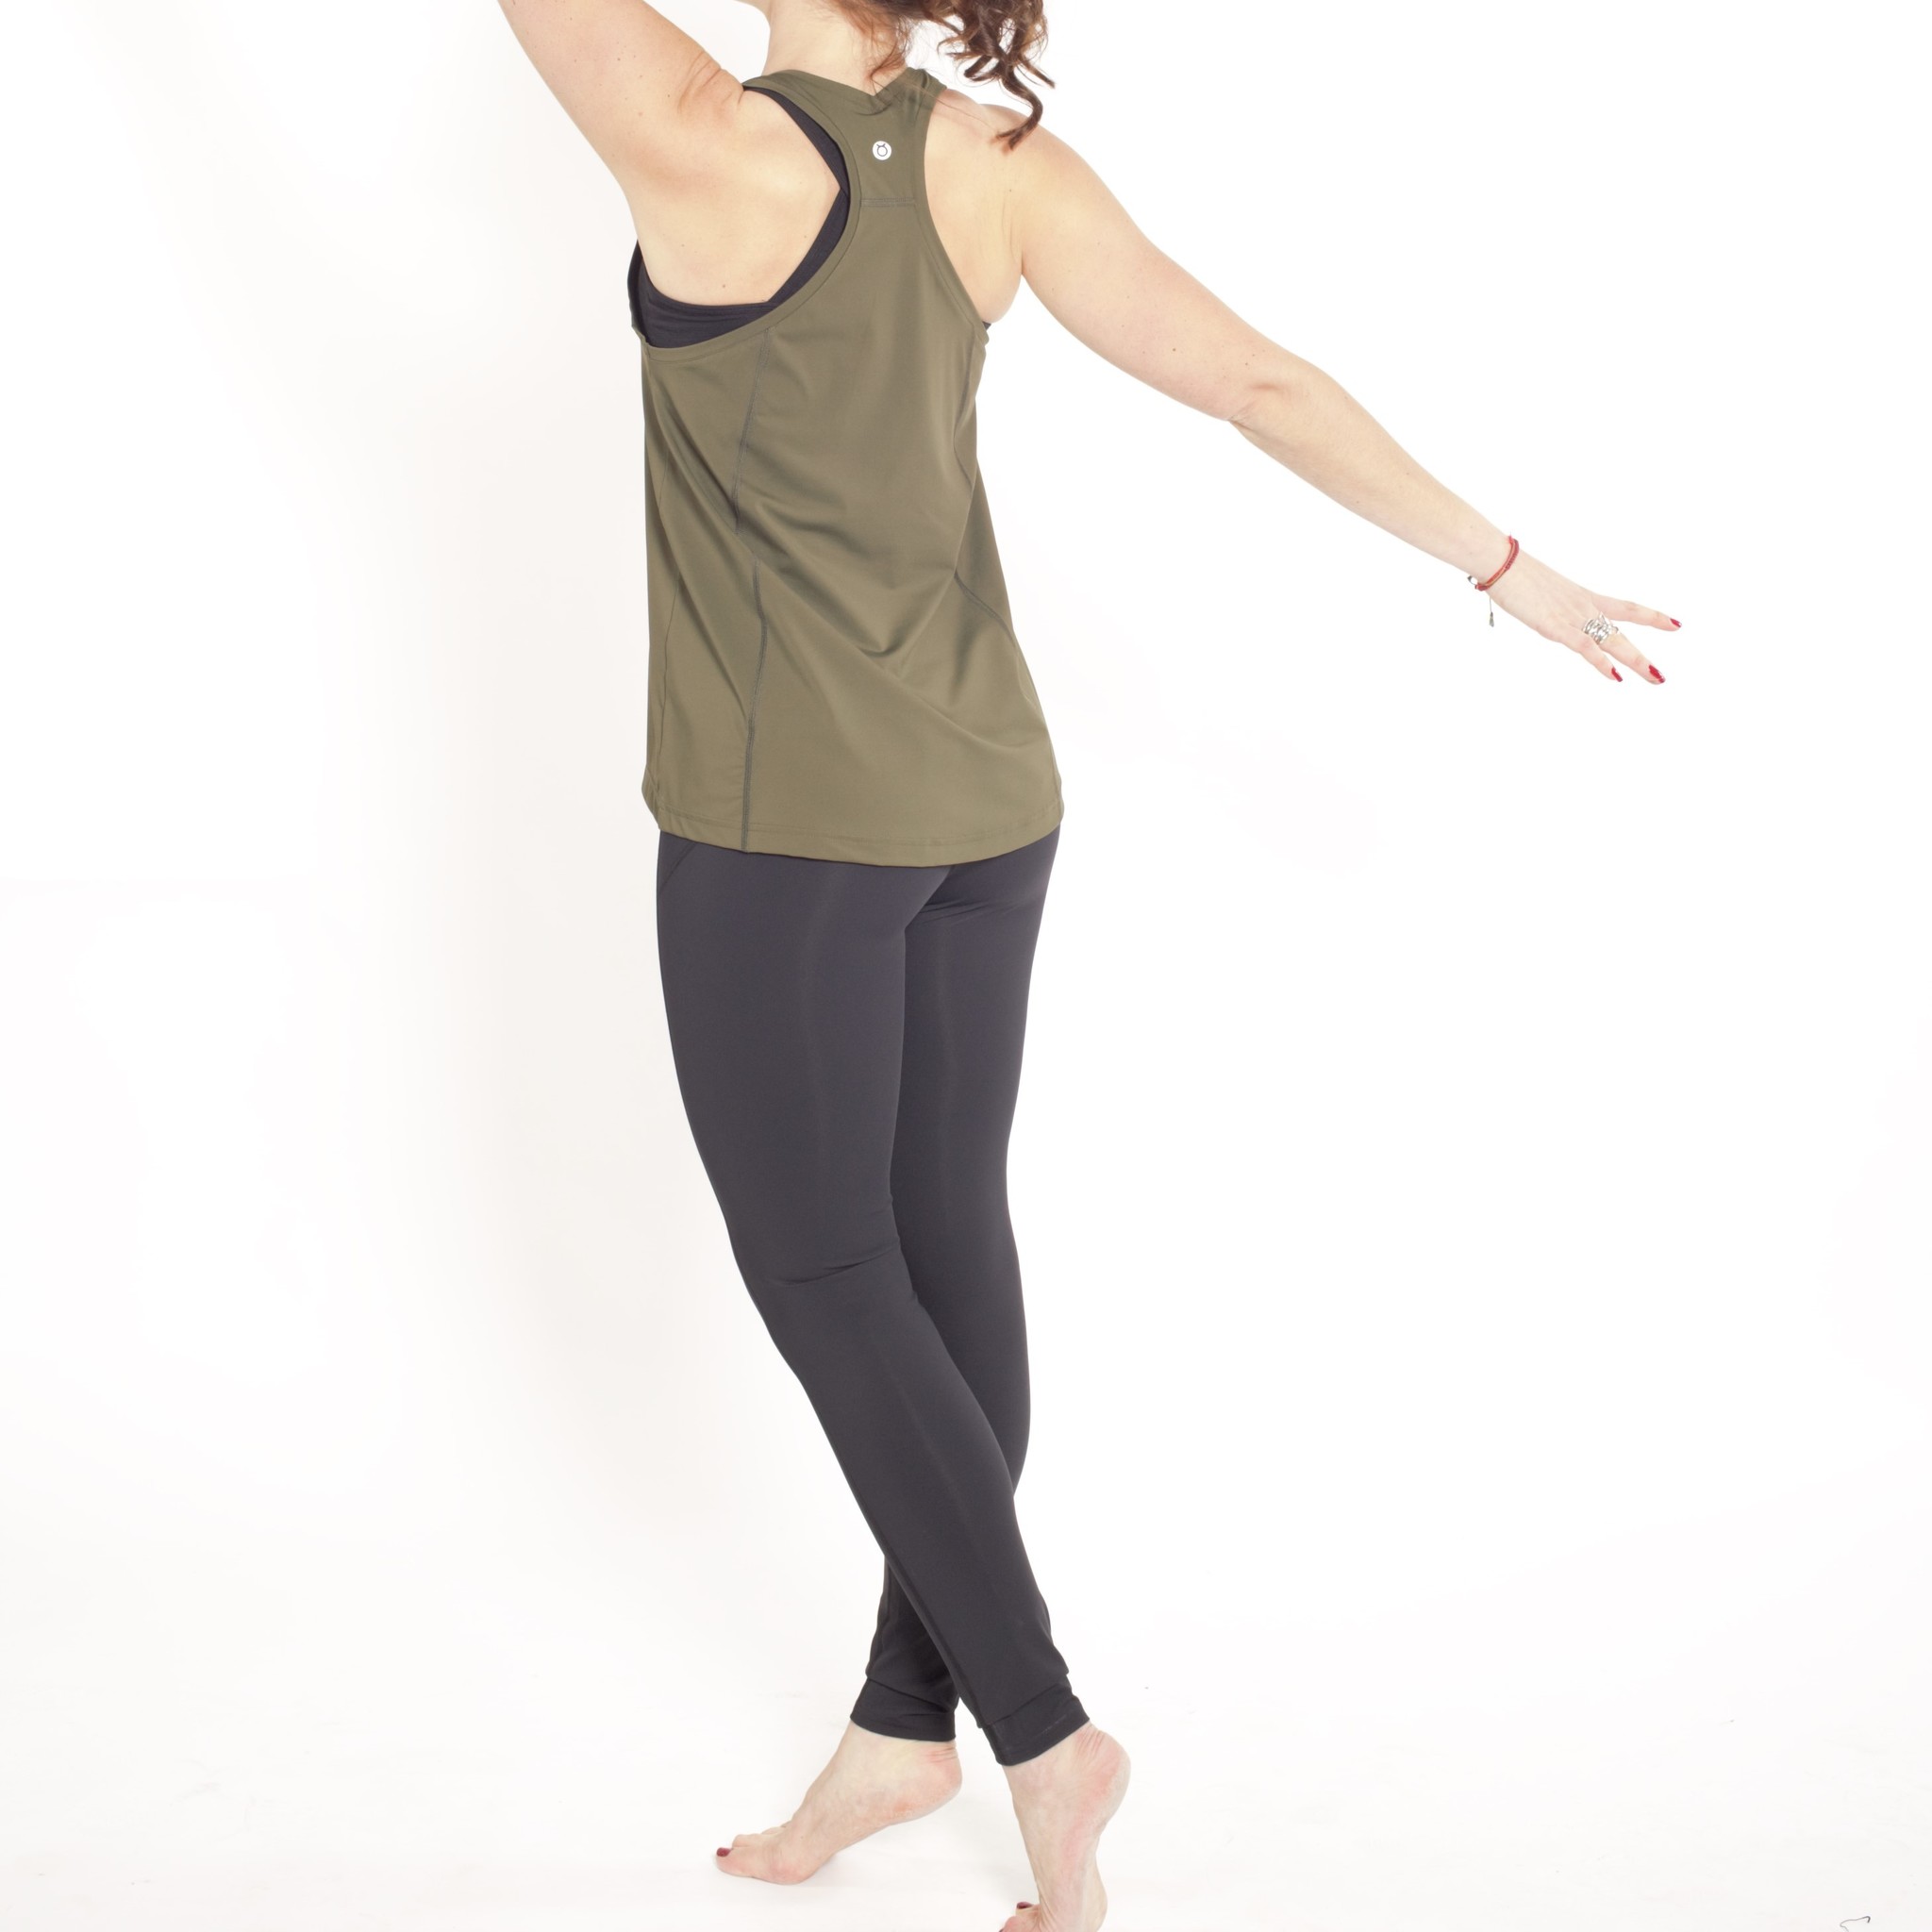 Vrouwen Sport Fitness Yoga Outfit Gradiënt Kleur Slim Fit Nylon Yoga Kleding  Set Voor Hardlopen Dansen Volleybal